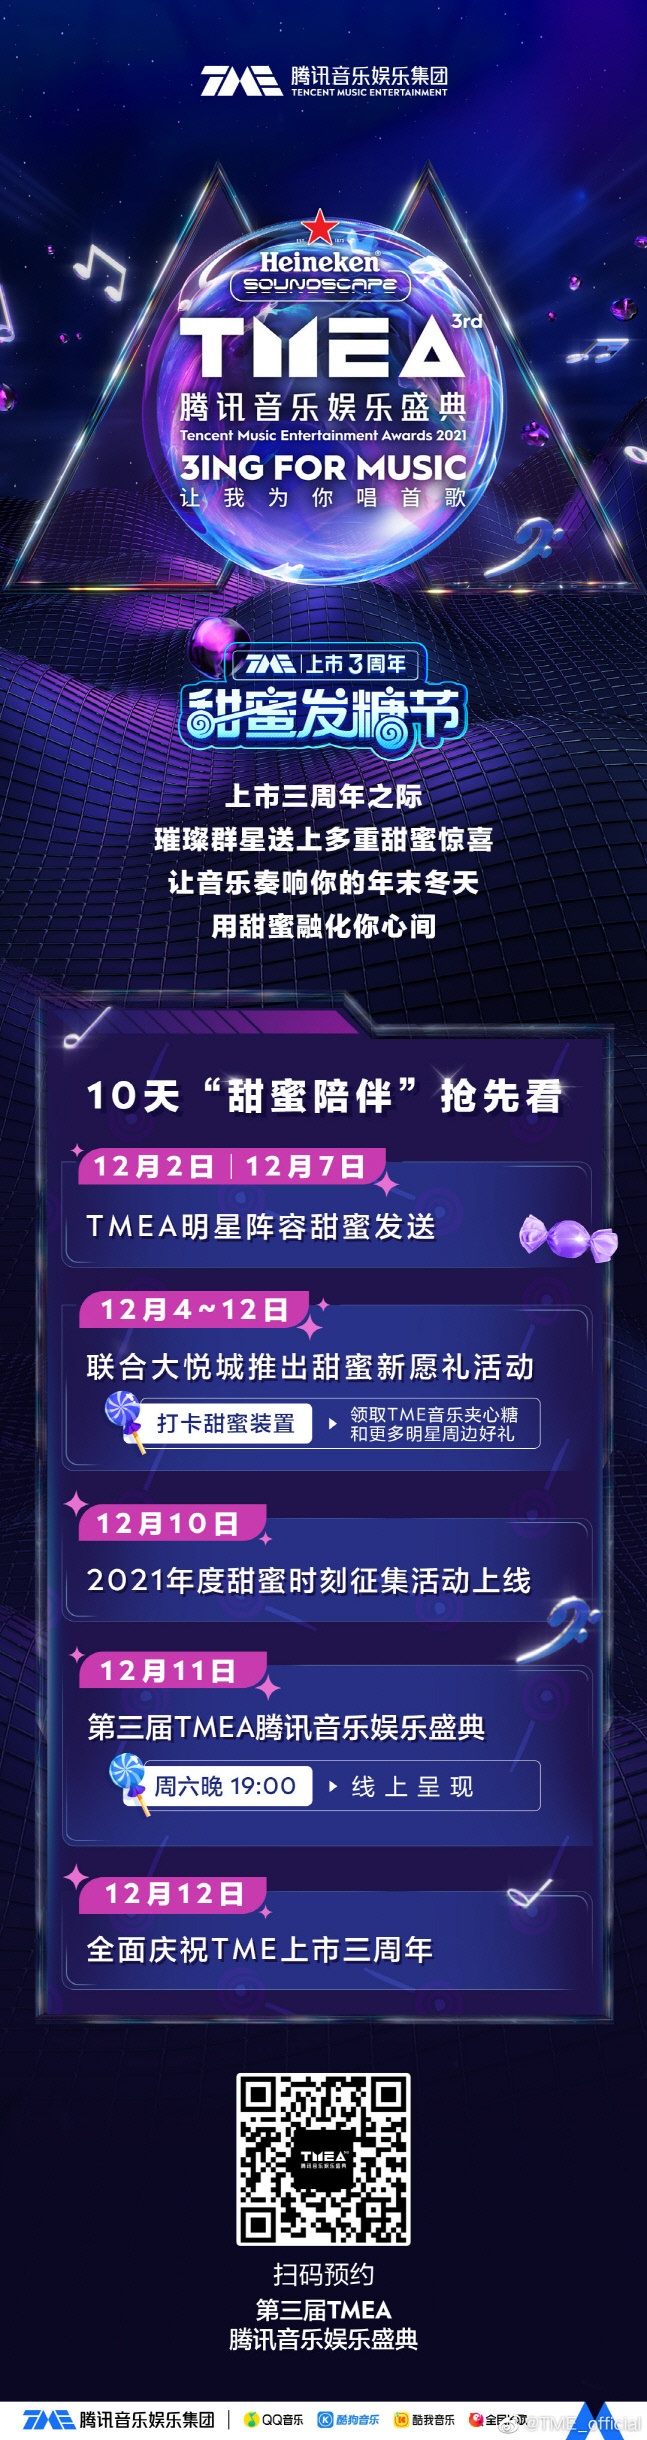 중국 텐센트 뮤직엔터테인먼트그룹이 주최하는 연말 가요시상식 TMEA 2021 공식 포스터. 출처|웨이보